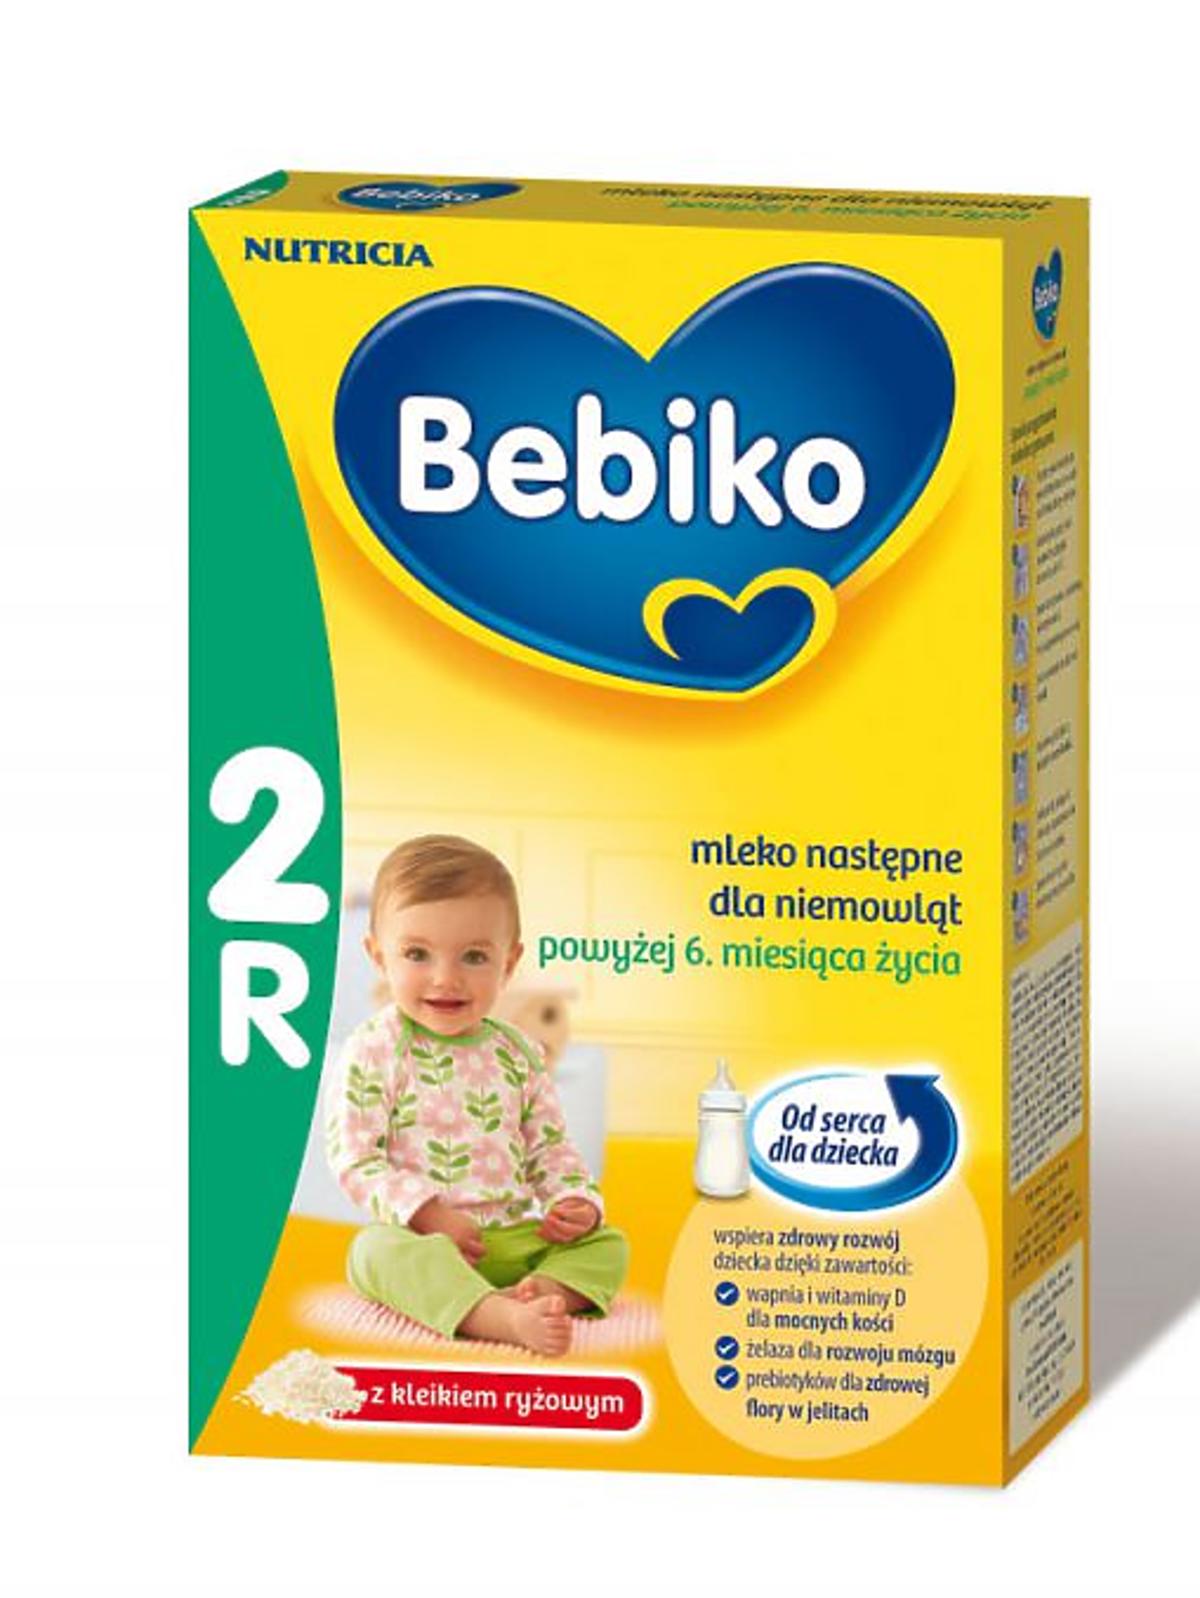 Bebiko-2R.jpg